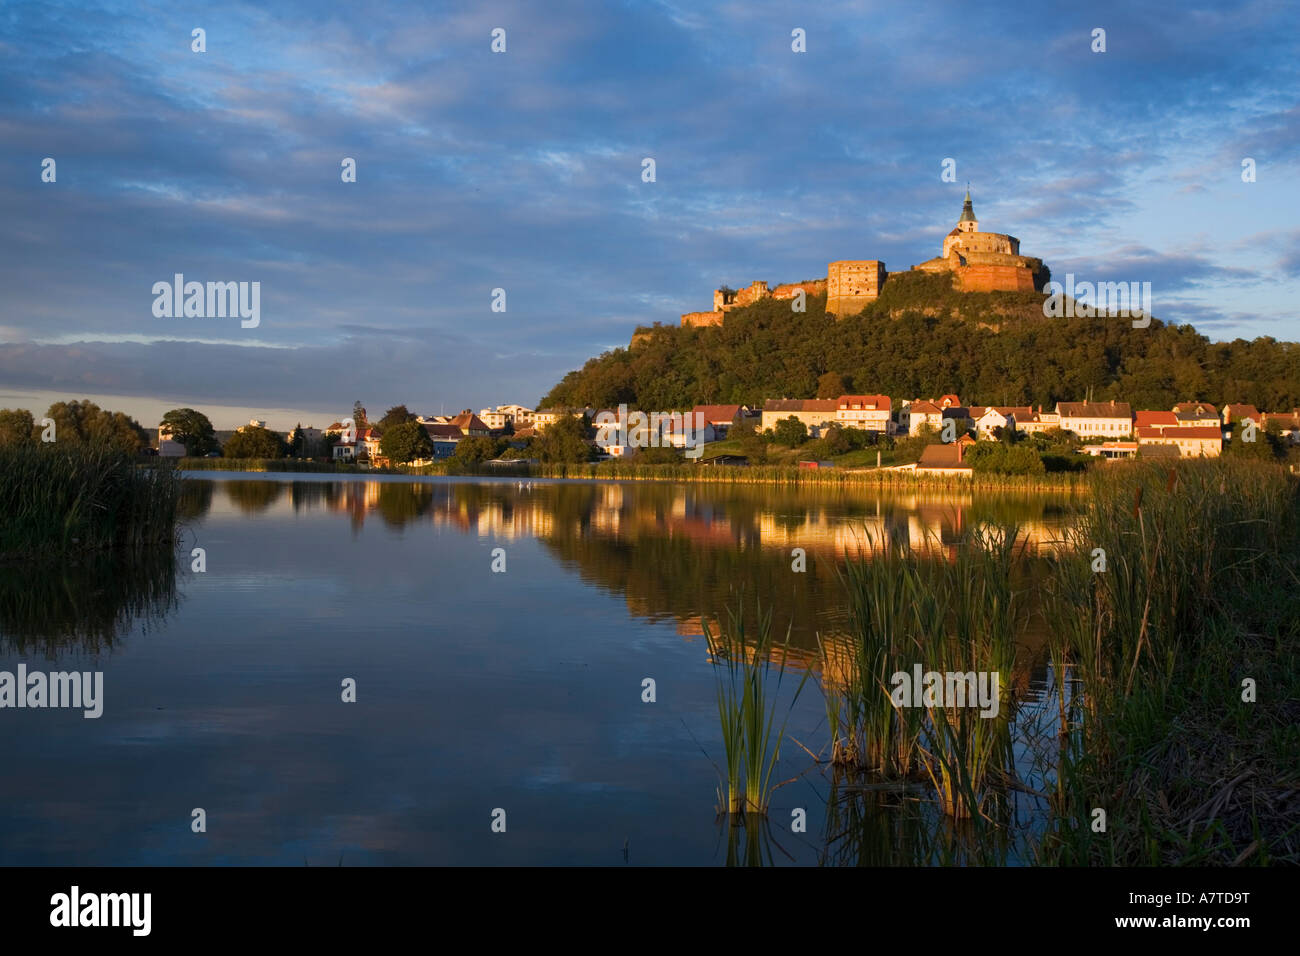 Castle on hill, Burgenland, Austria Stock Photo